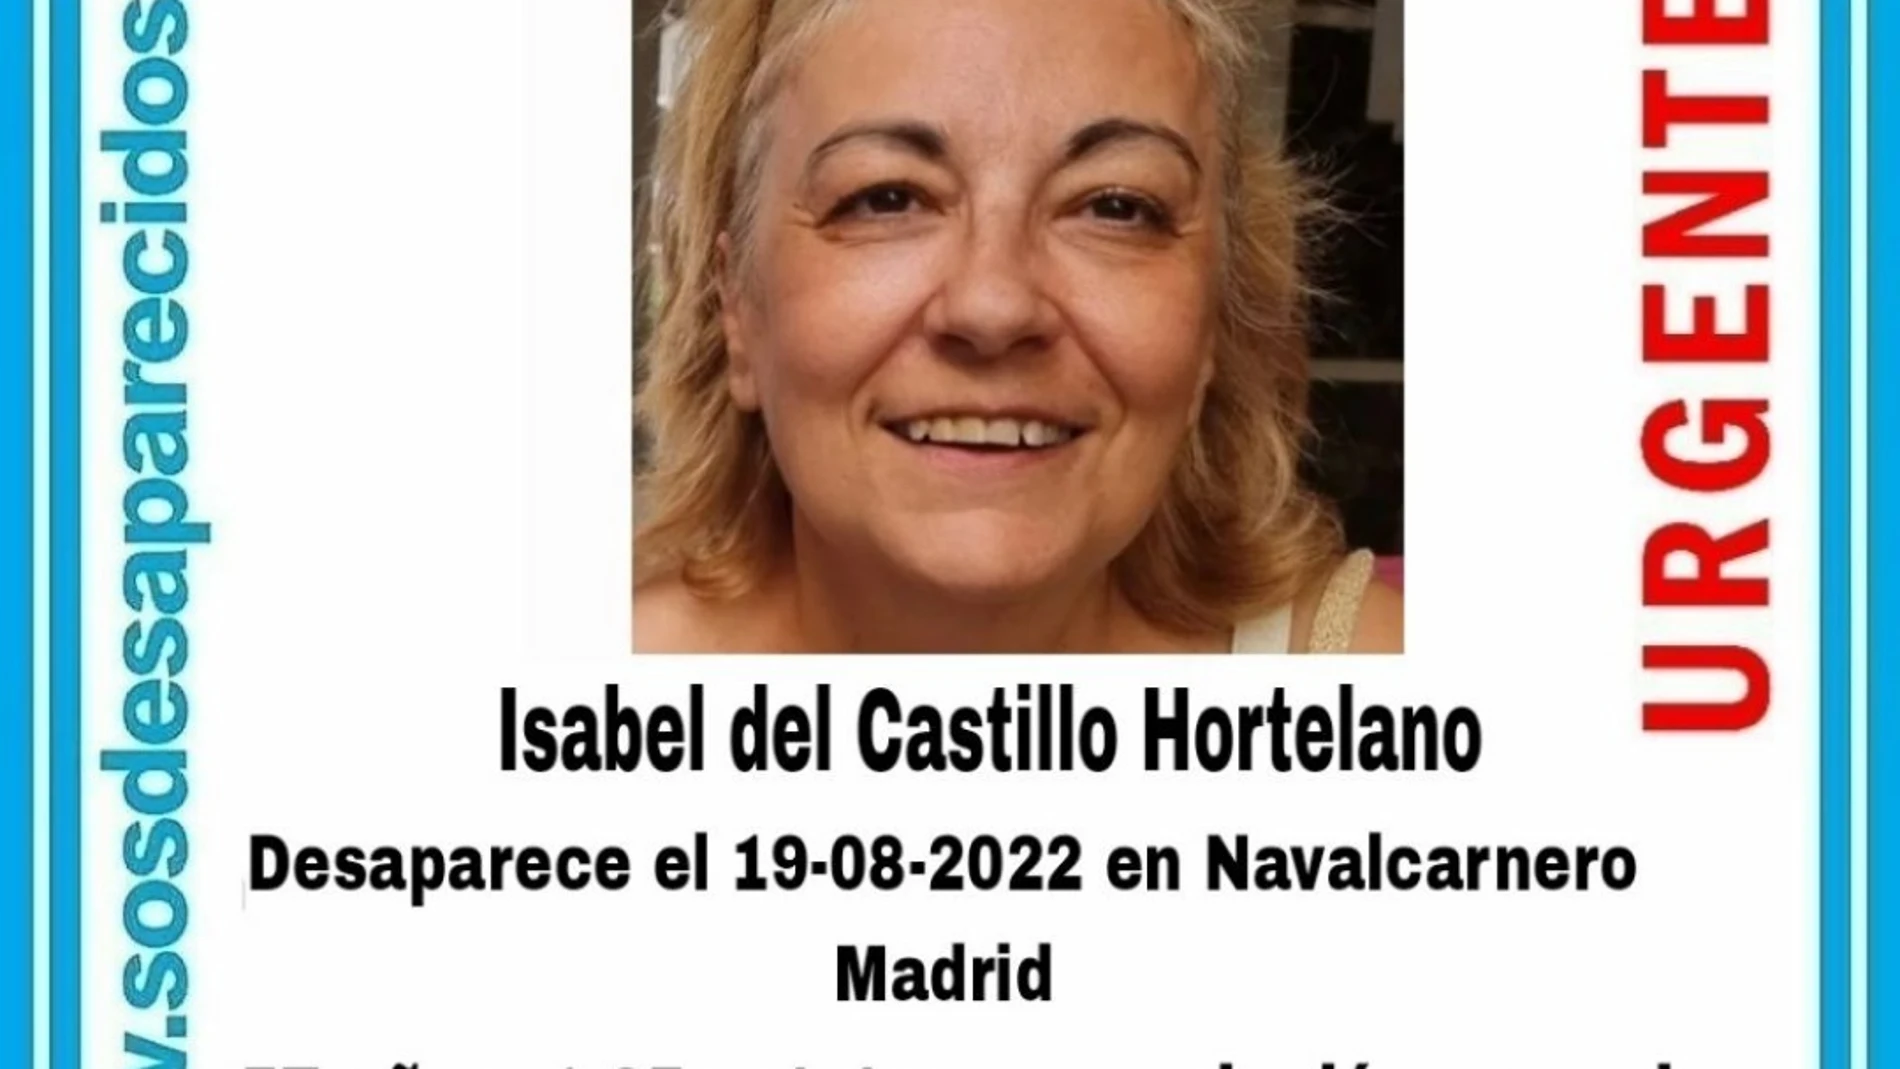 Cartel de Sos Desaparecidos para ayudar en la búsqueda de Isabel del Castillo